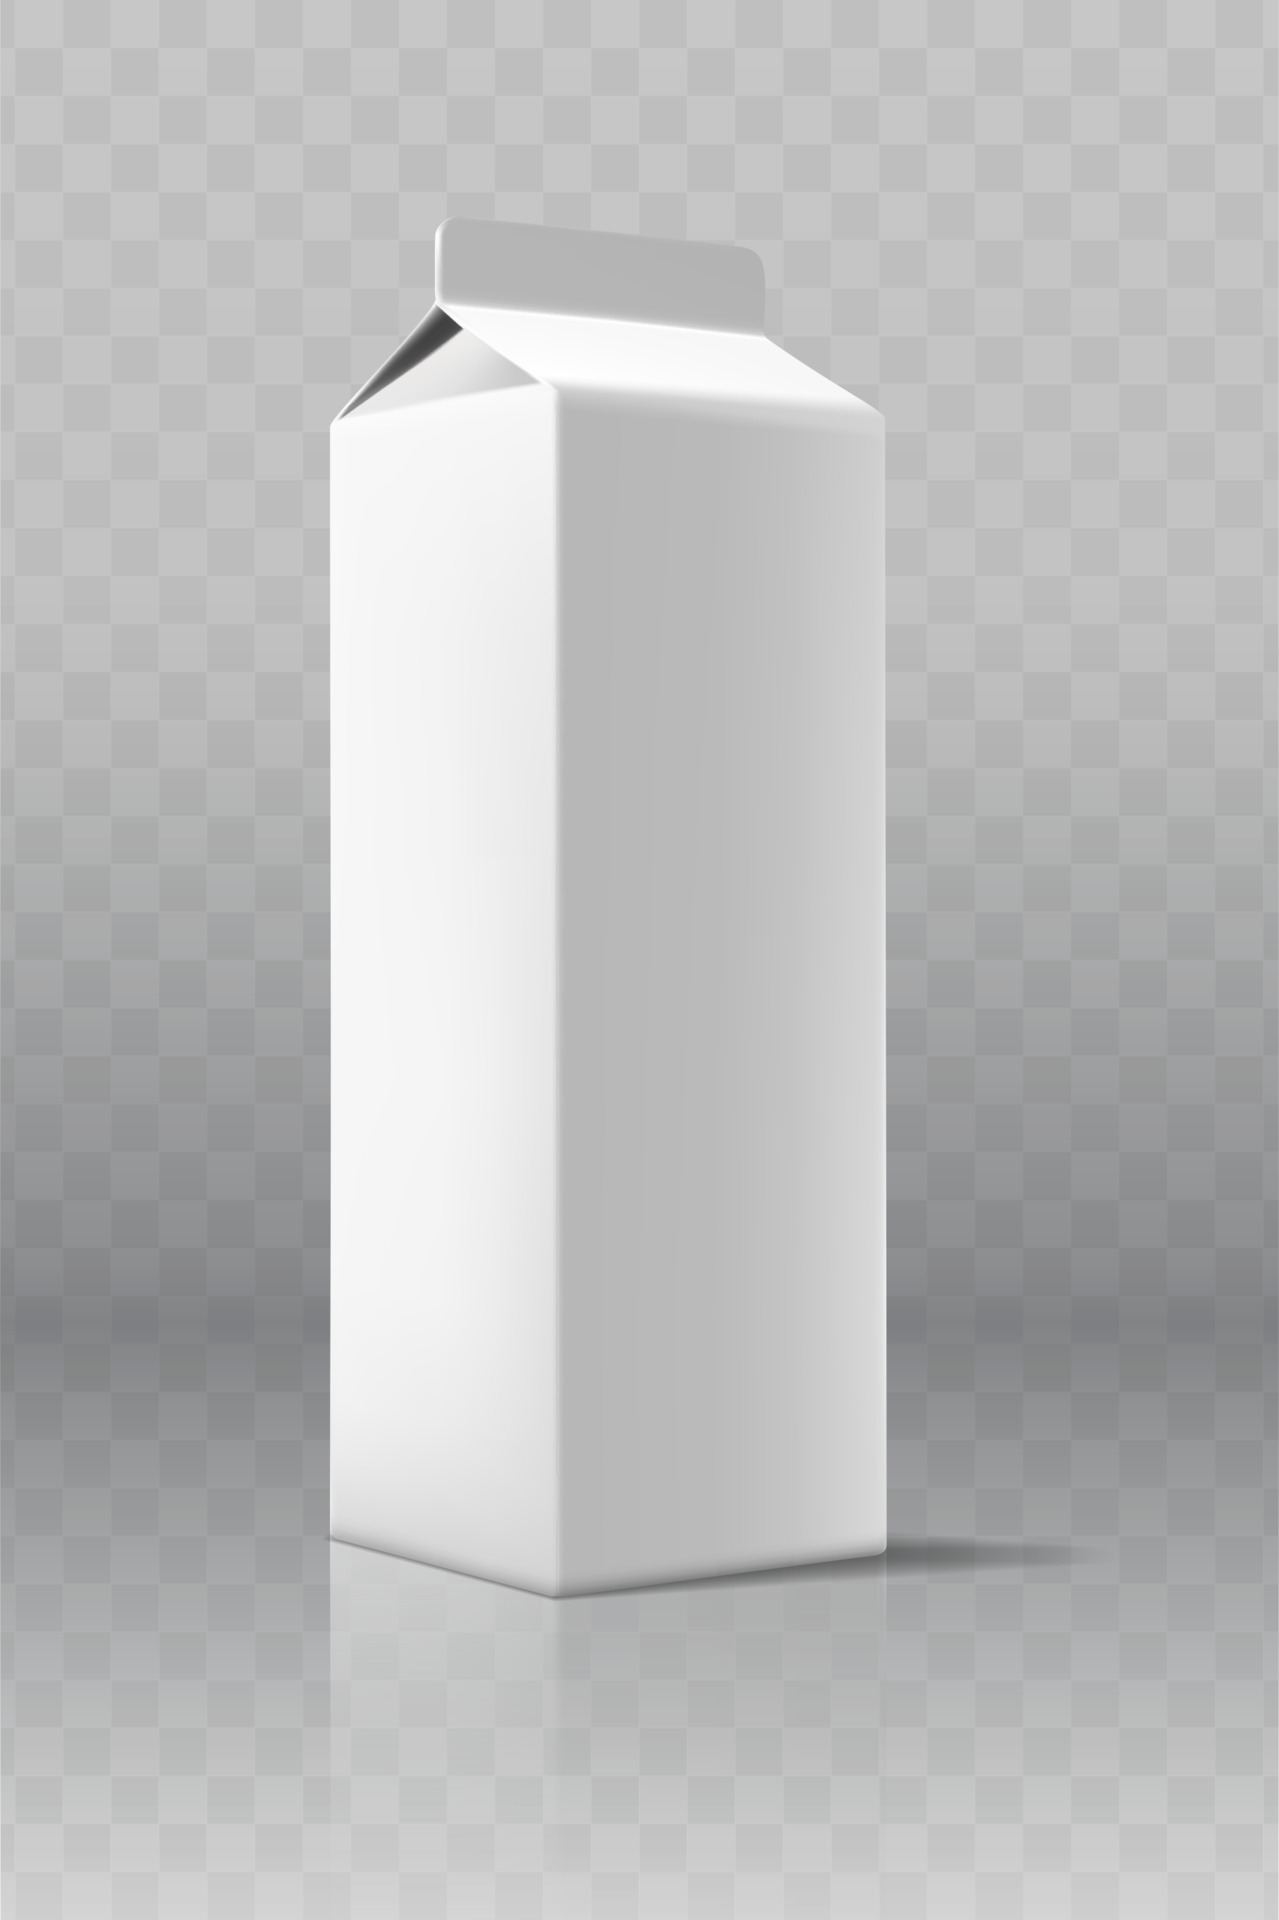 Icono De Caja Blanca En Blanco 3d Caja. Ilustración De Vector Del Mockup  Del Paquete De La Caja. Ilustraciones svg, vectoriales, clip art  vectorizado libre de derechos. Image 82072628